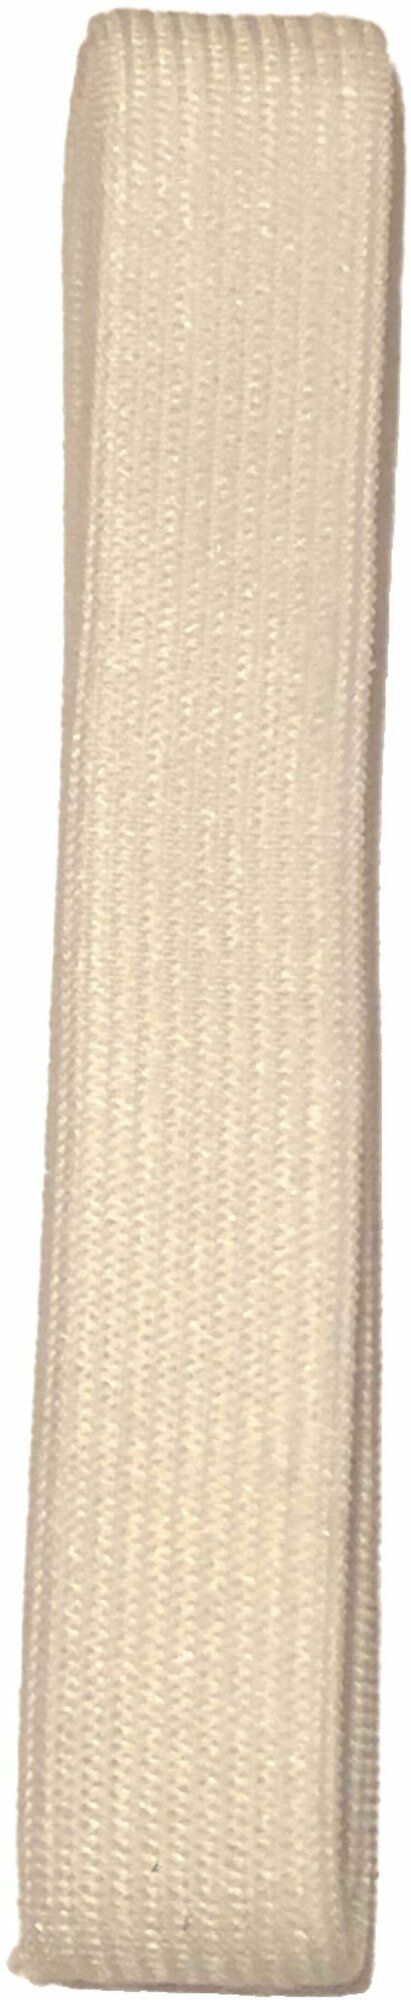 Кружево стрейч, Кружевная лента 2 метра белого цвета